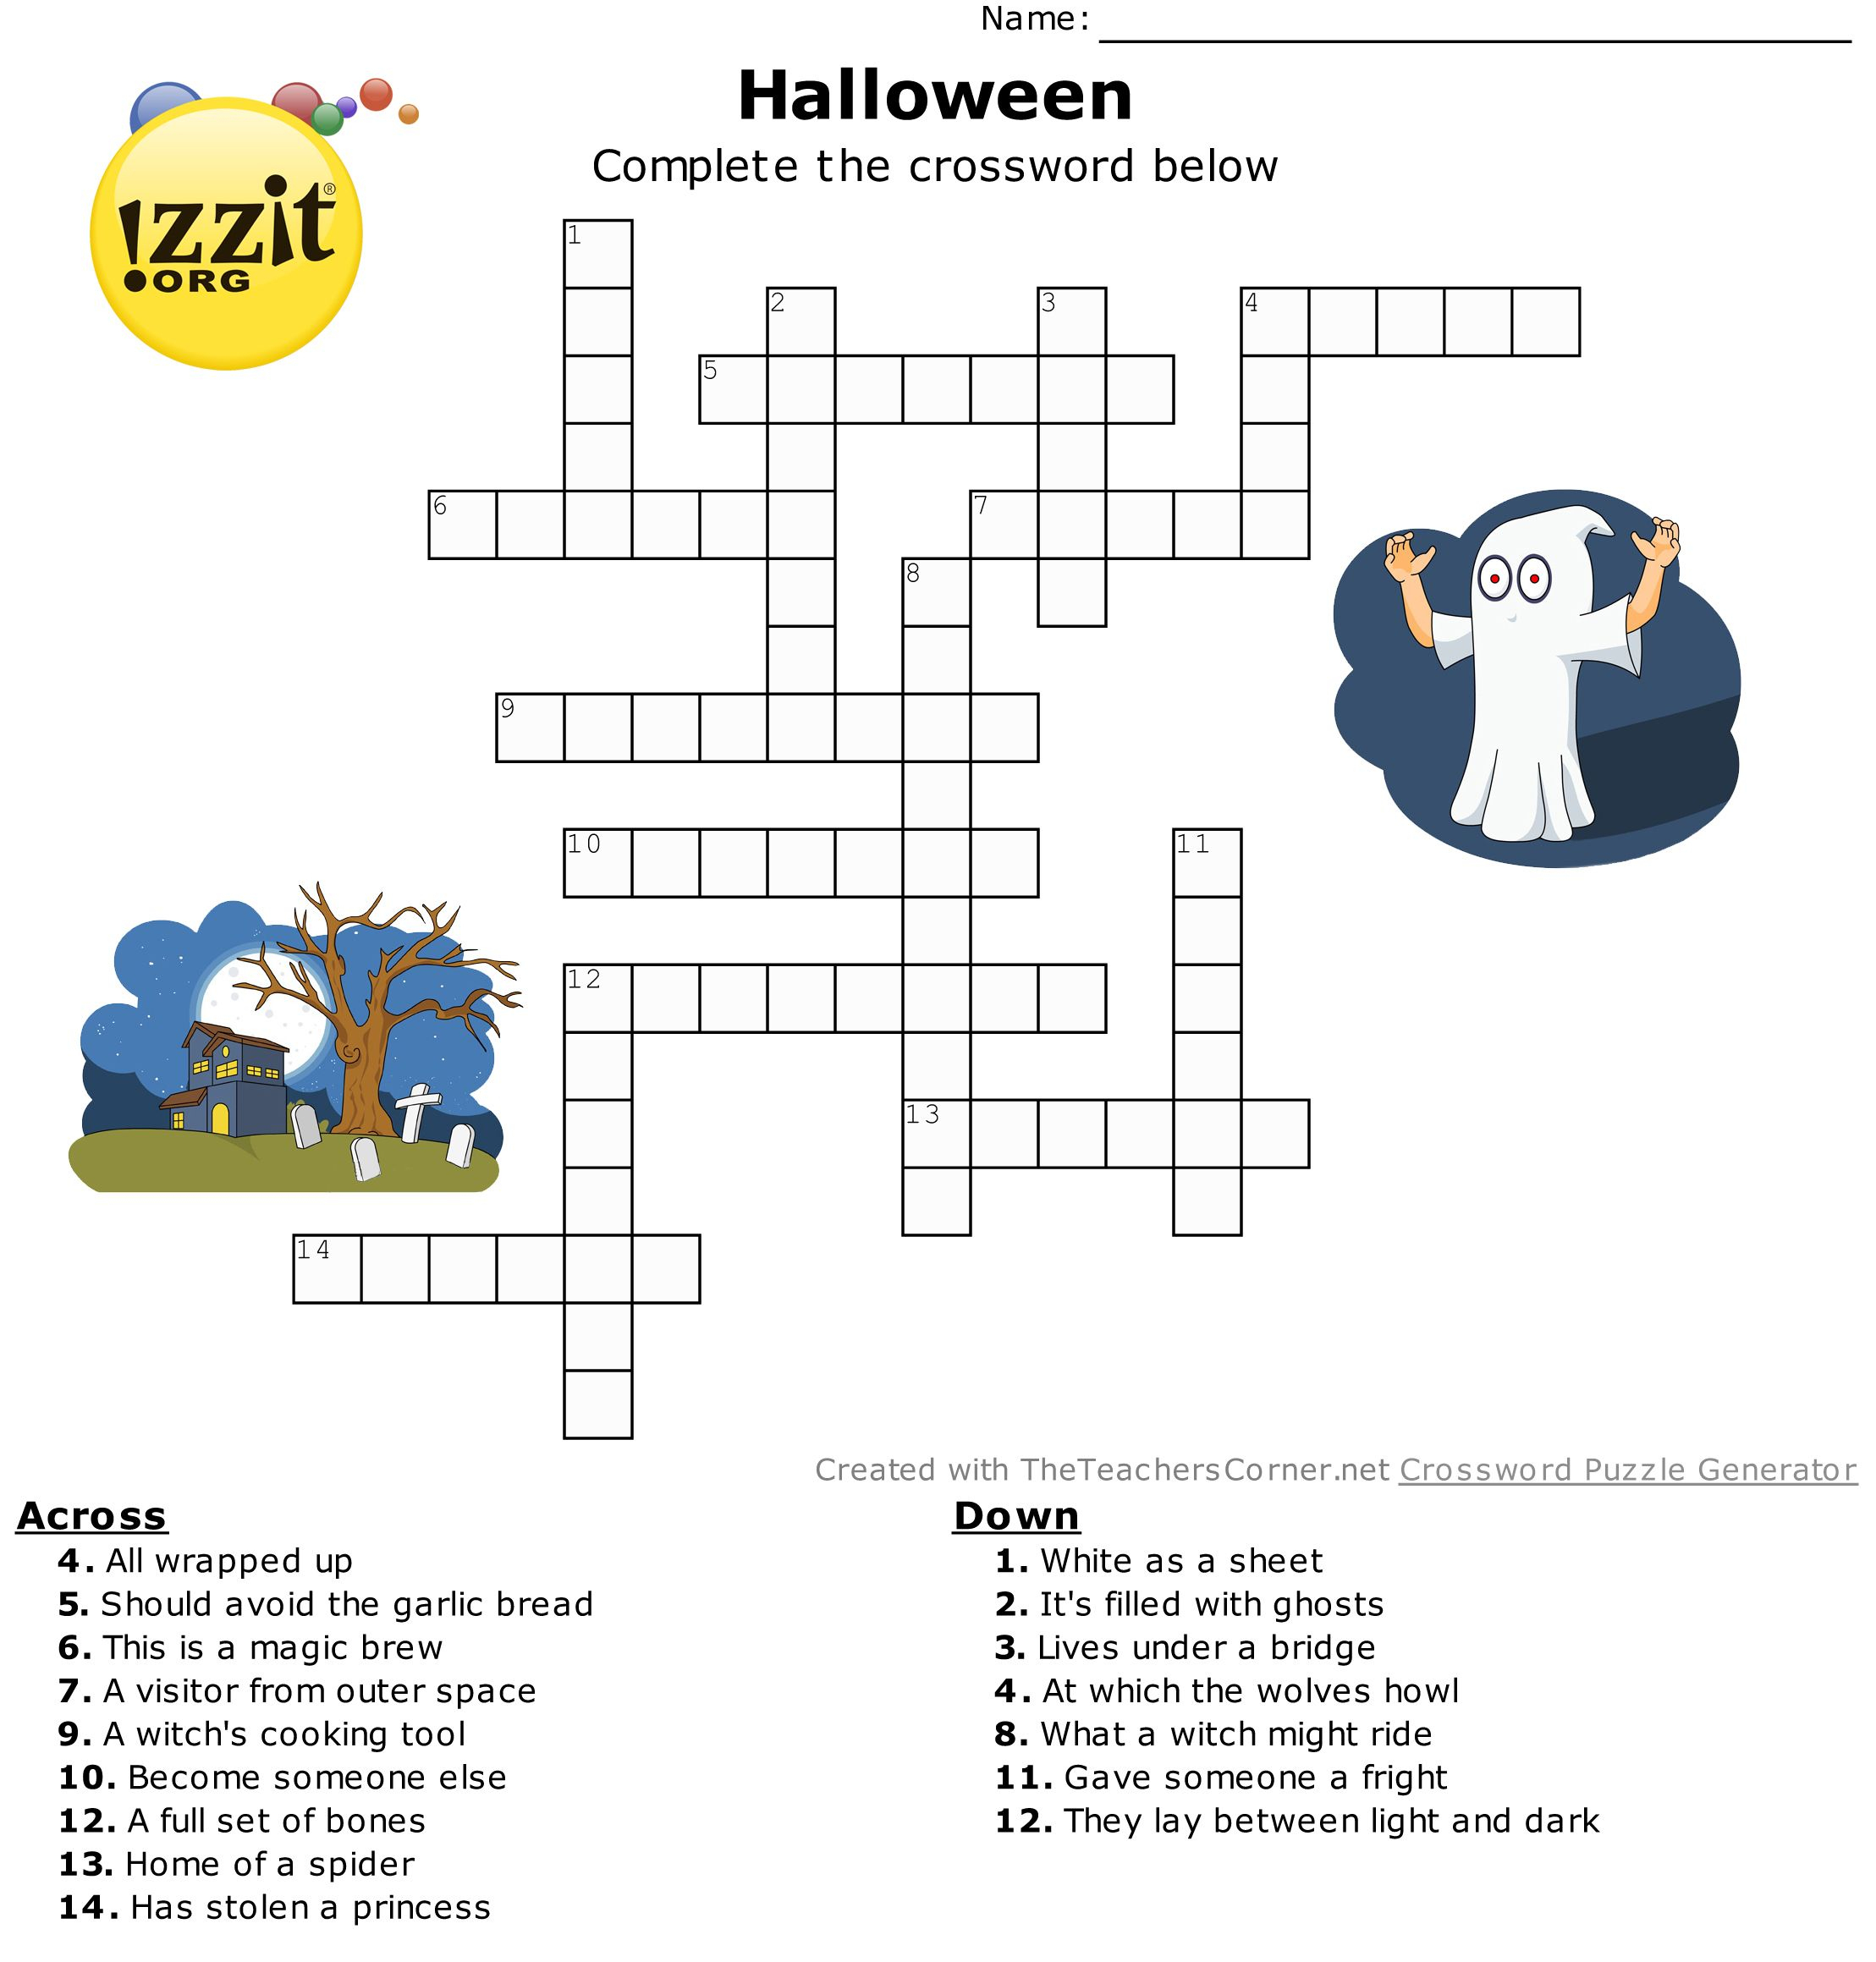 Halloween Crossword - Hard #happyhalloween 💀👻🎃 | Classroom - Hard Halloween Crossword Puzzles Printable